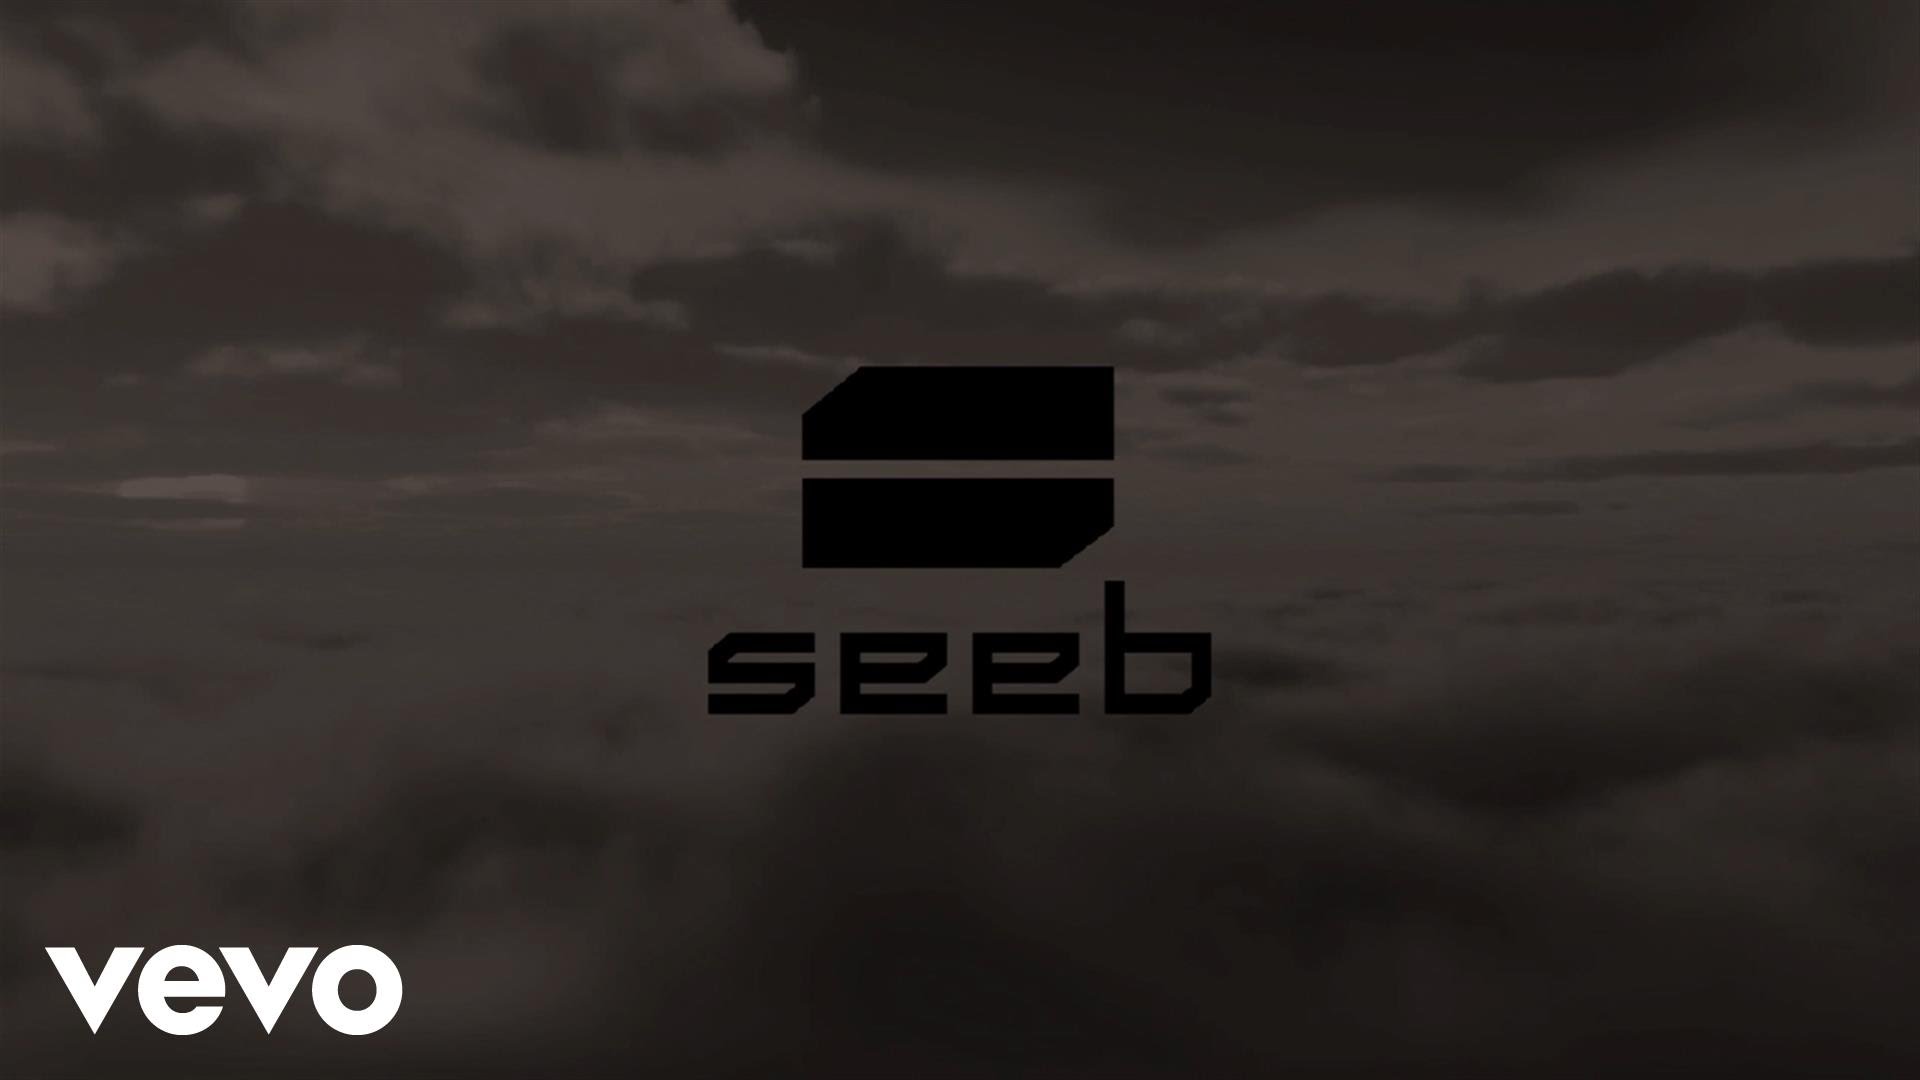 Seeb - Breathe